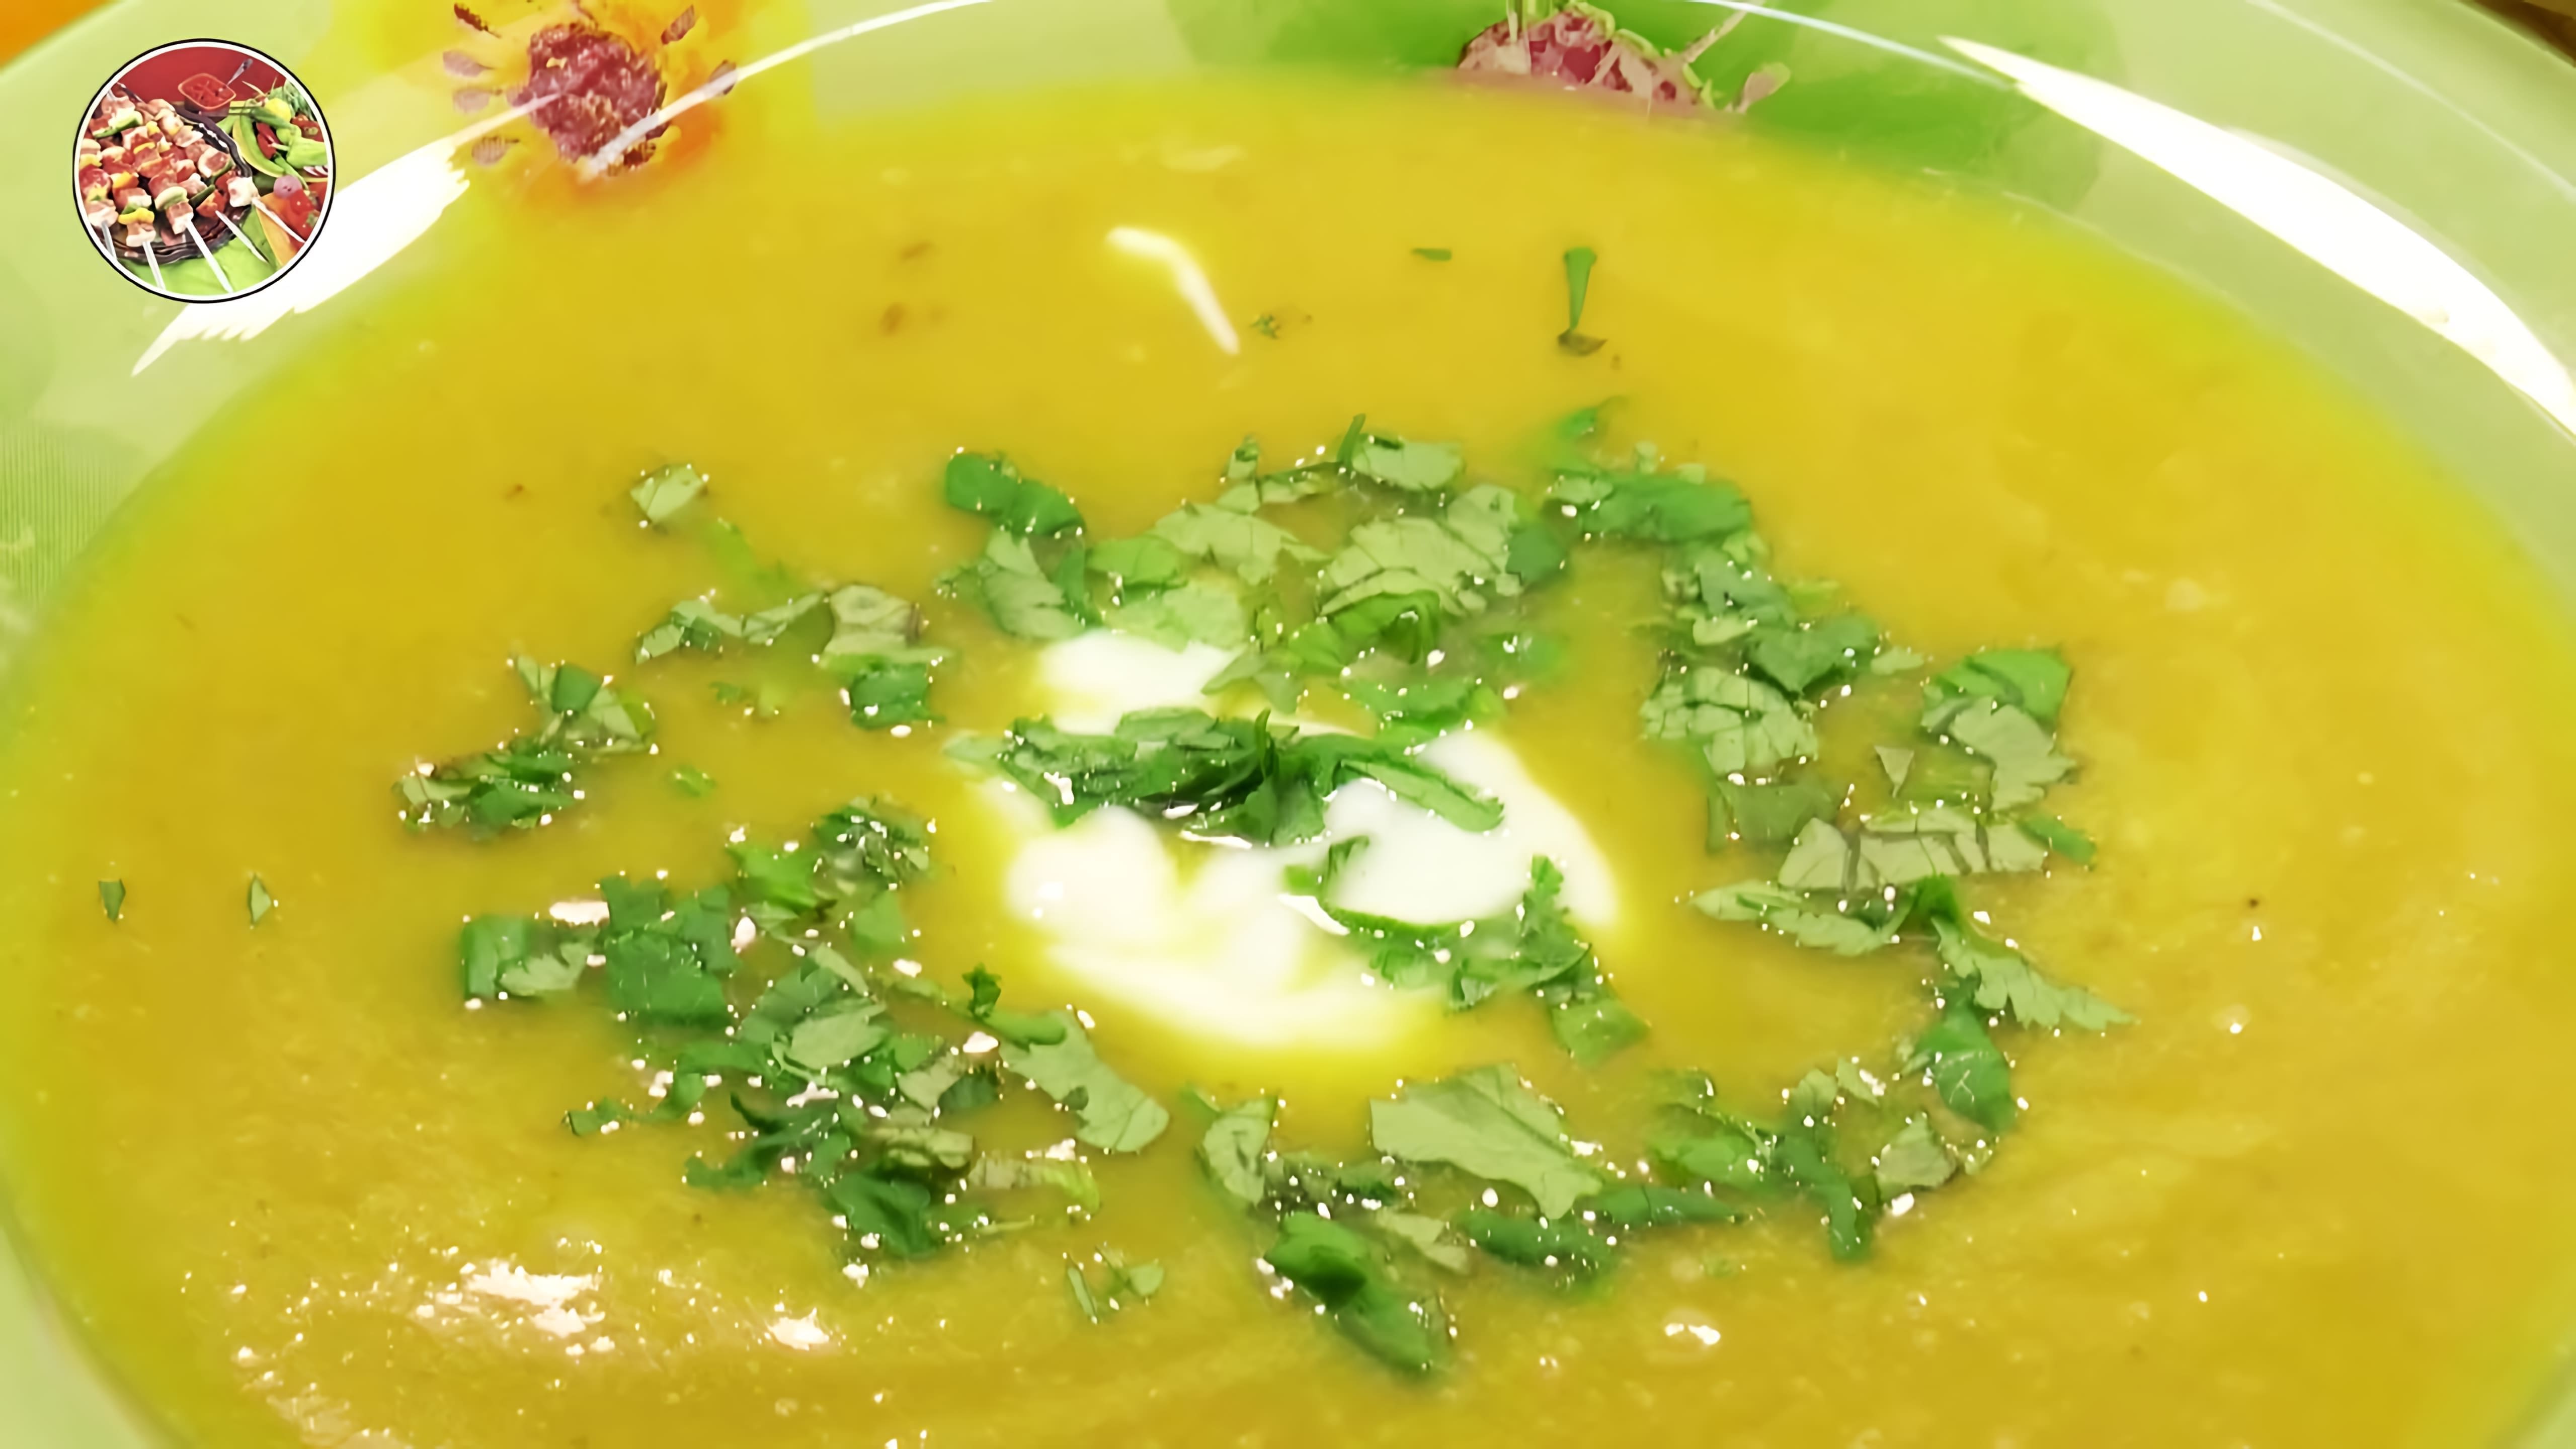 В этом видео демонстрируется процесс приготовления крем-супа из тыквы и шампиньонов